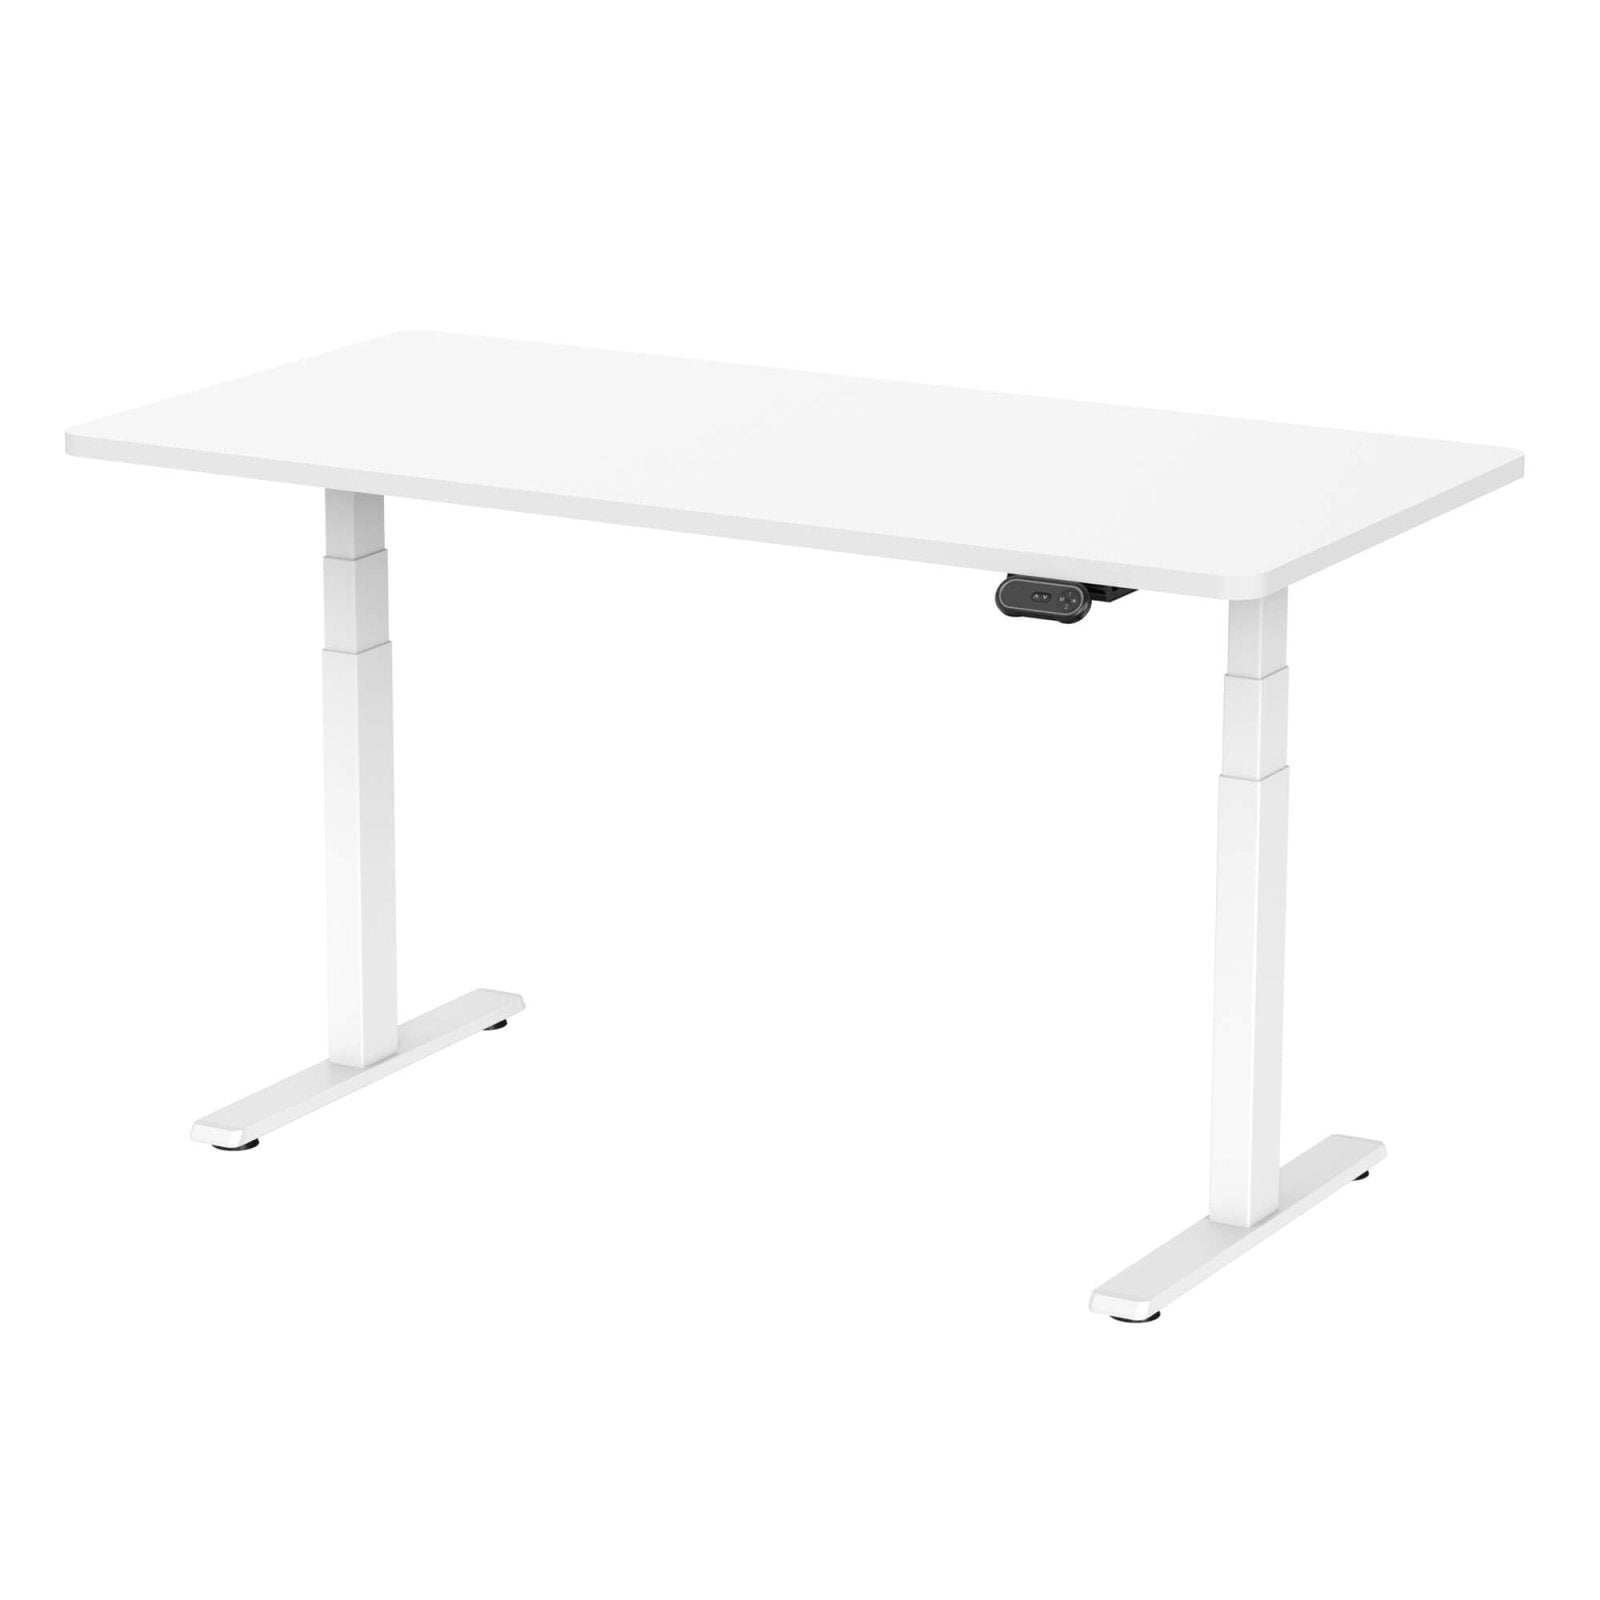 StandXT elektrisch höhenverstellbarer Schreibtisch - D06 - StandXT - Höhenverstellbare Tische